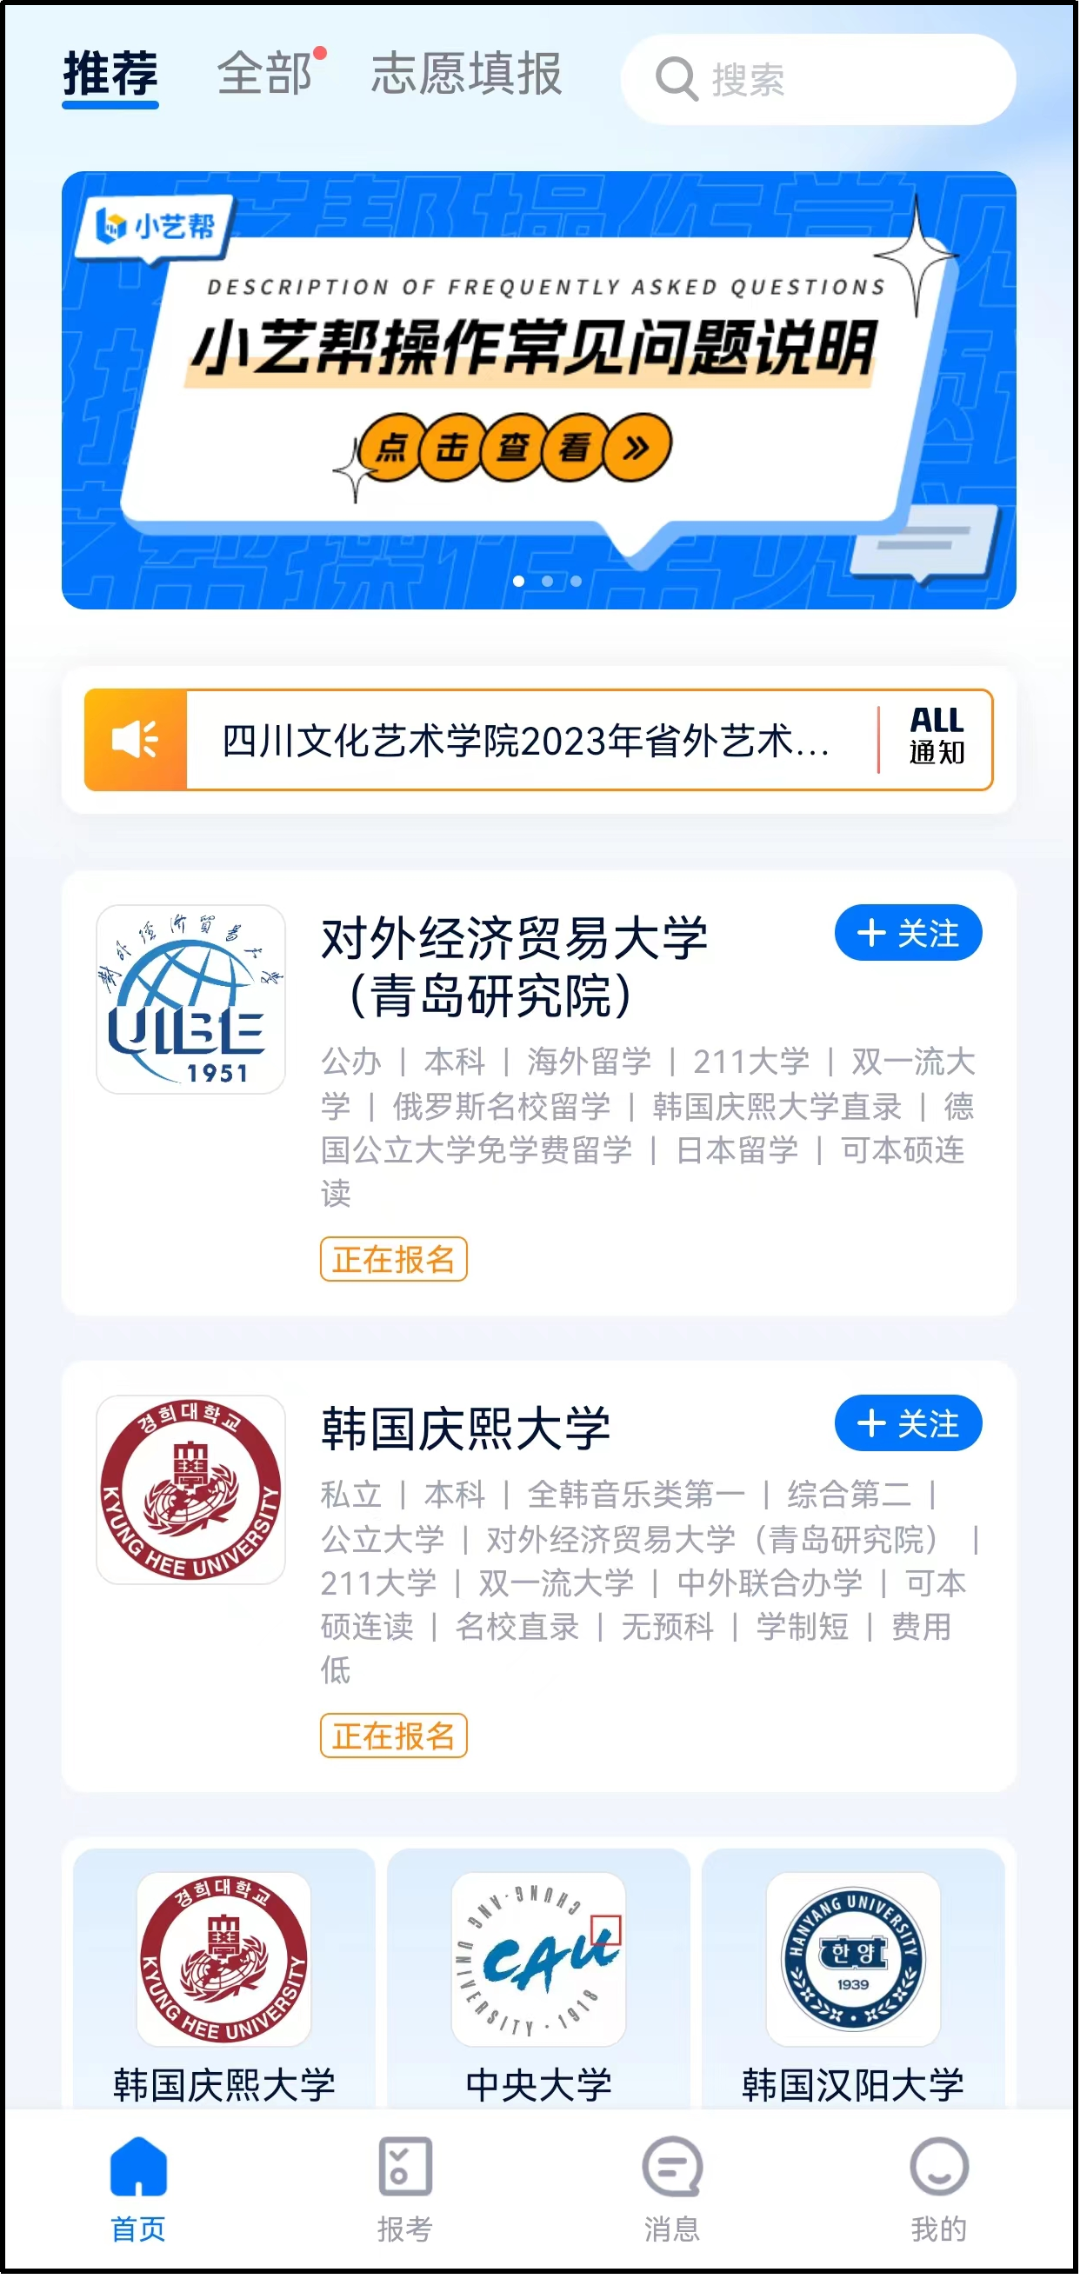 2023年天津传媒学院音乐、舞蹈类专业校考小艺帮APP4.0及小艺帮助手用户操作指南